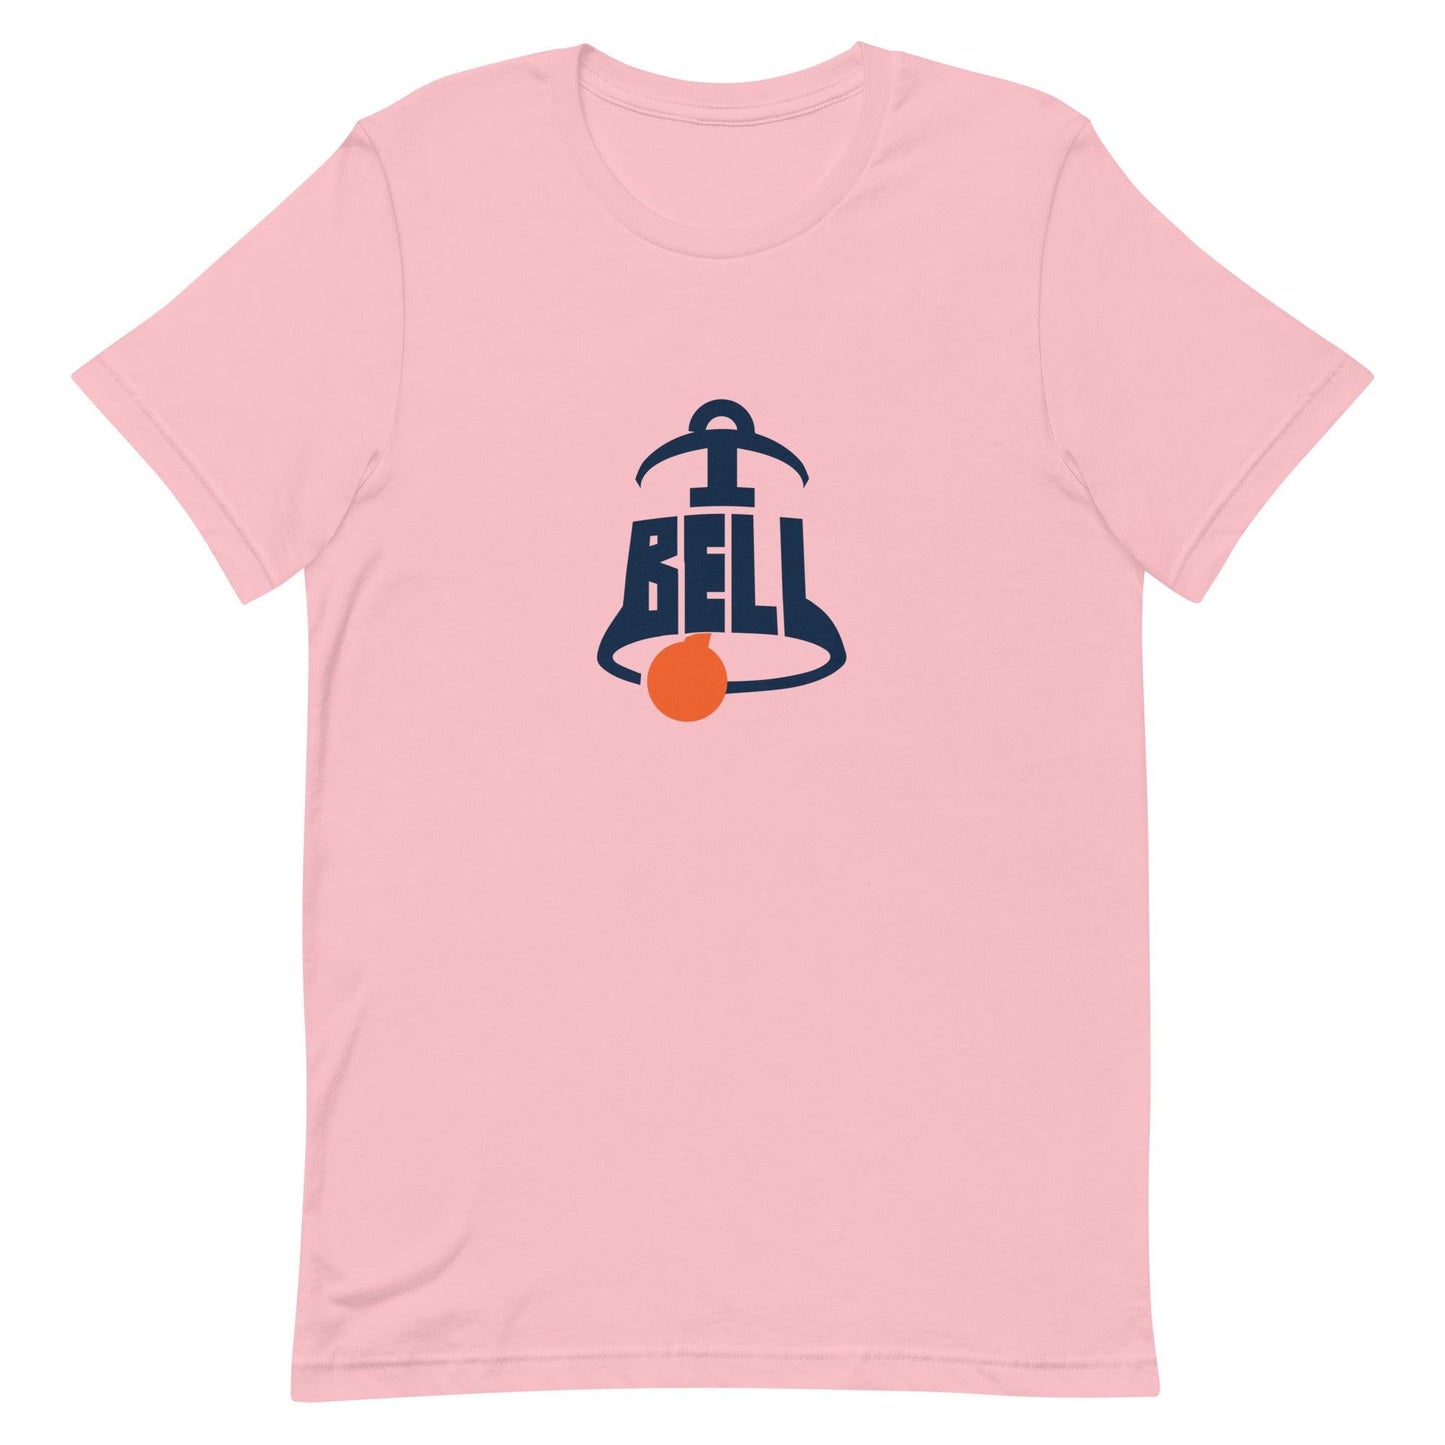 Trumane Bell II "Gametime" t-shirt - Fan Arch